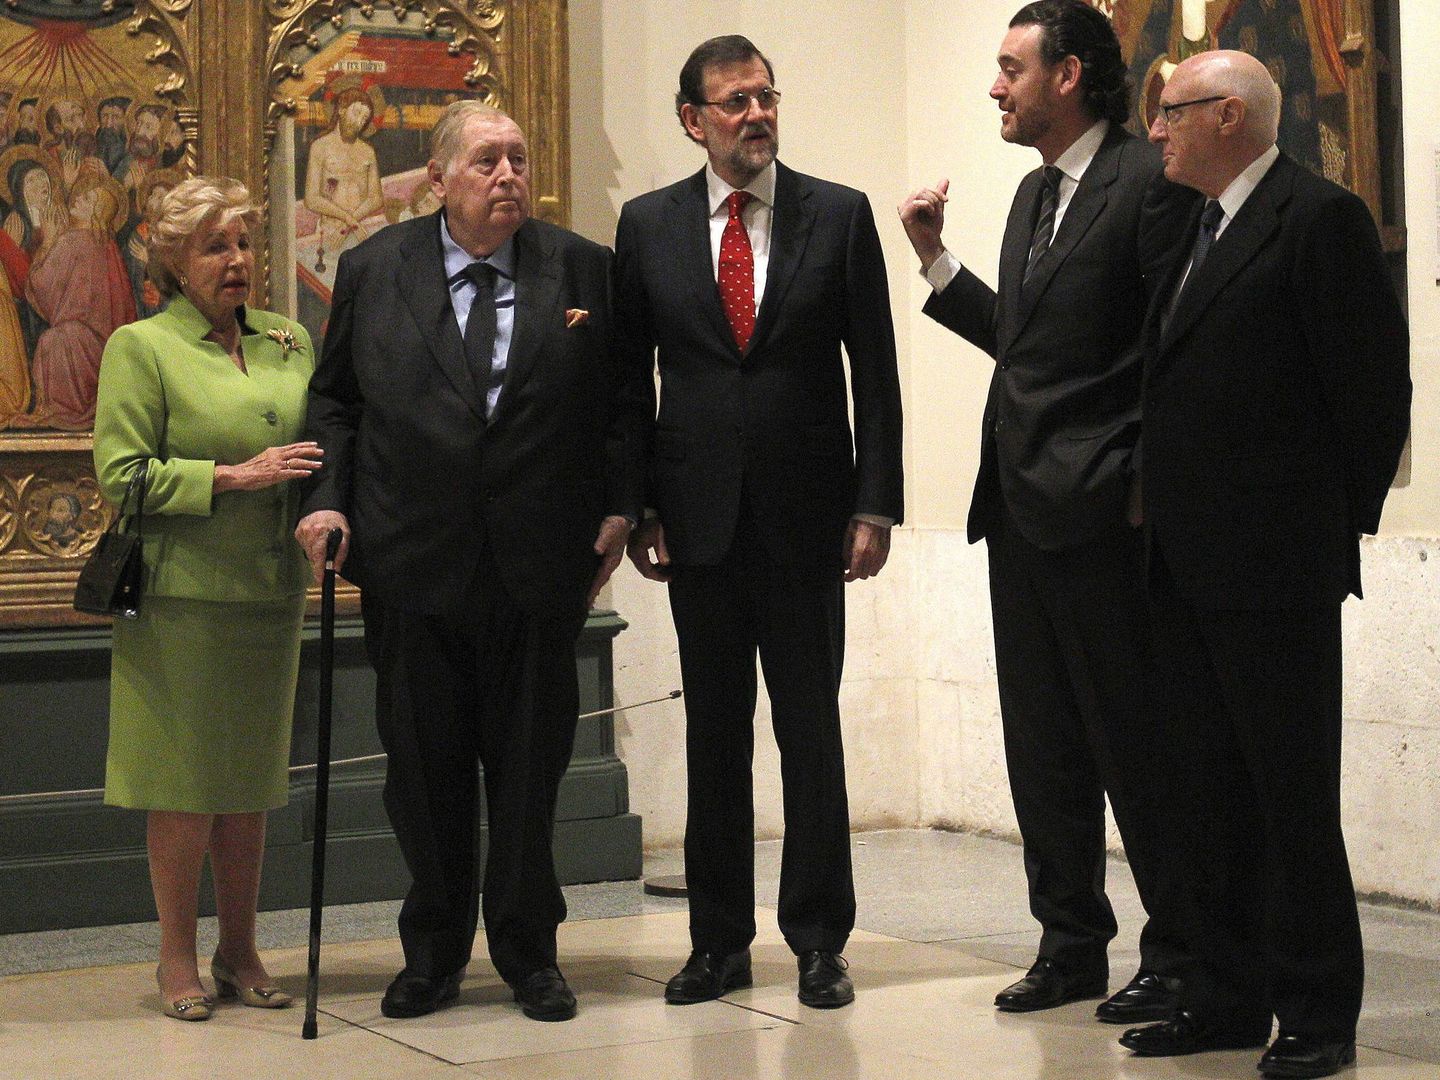 La familia Várez Fisa, Mariano Rajoy, Miguel Zugaza y Pérez-Llorca, en El Prado. (Efe)